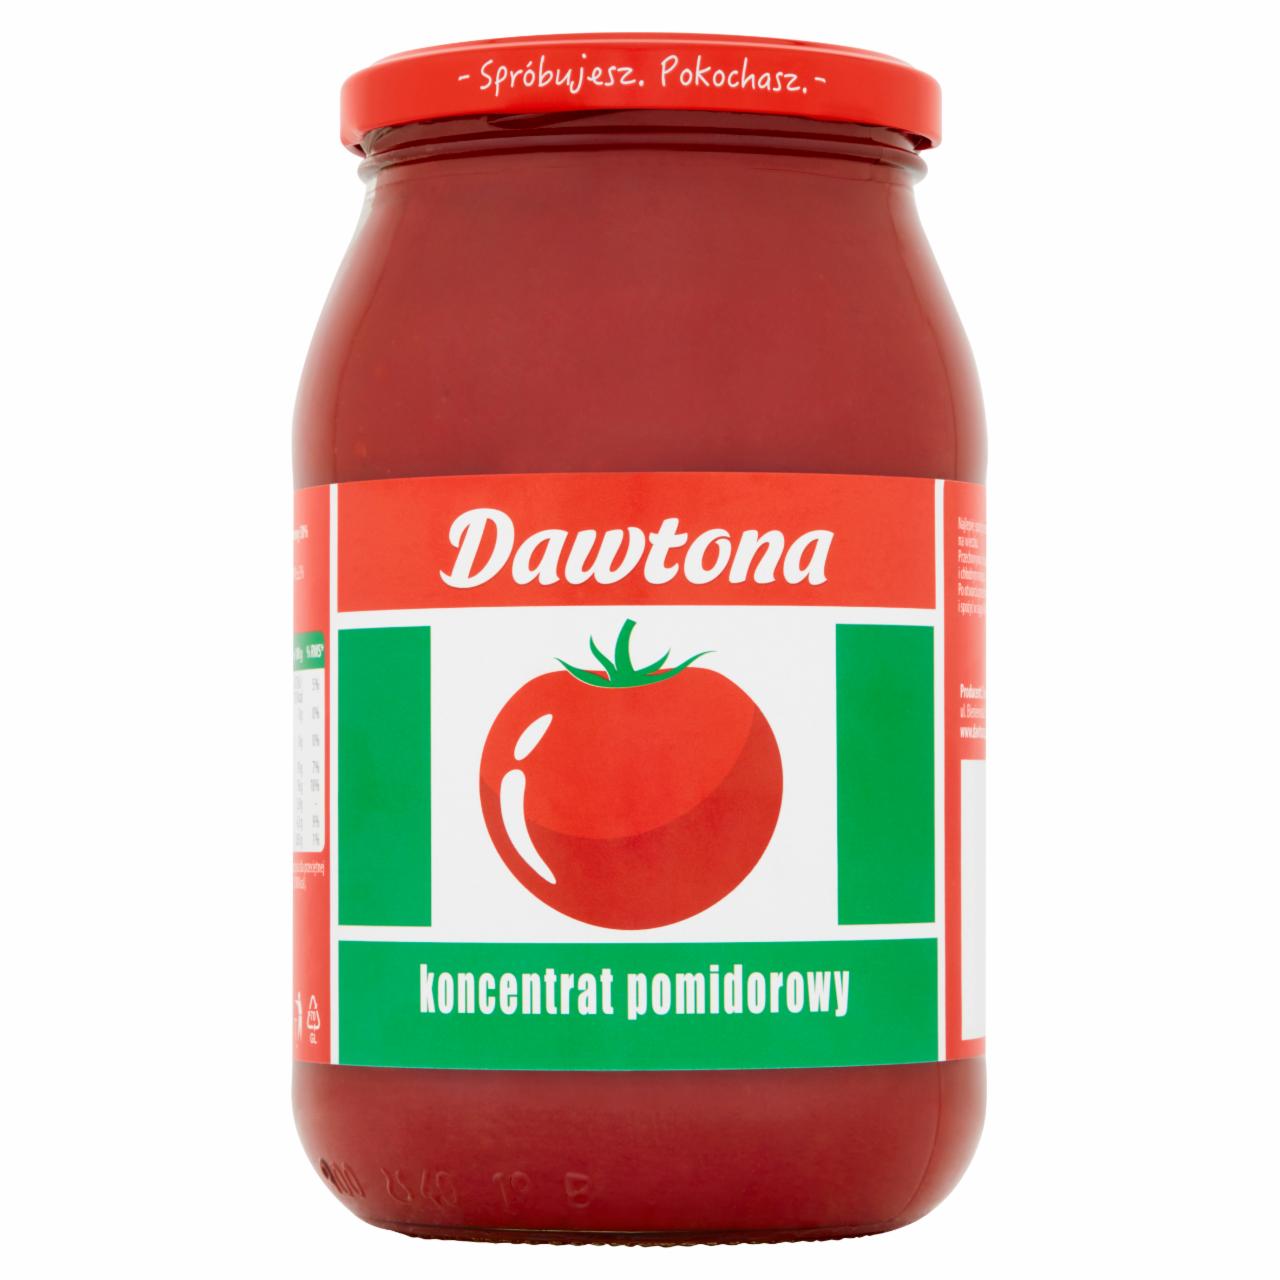 Zdjęcia - Dawtona Koncentrat pomidorowy 1 kg